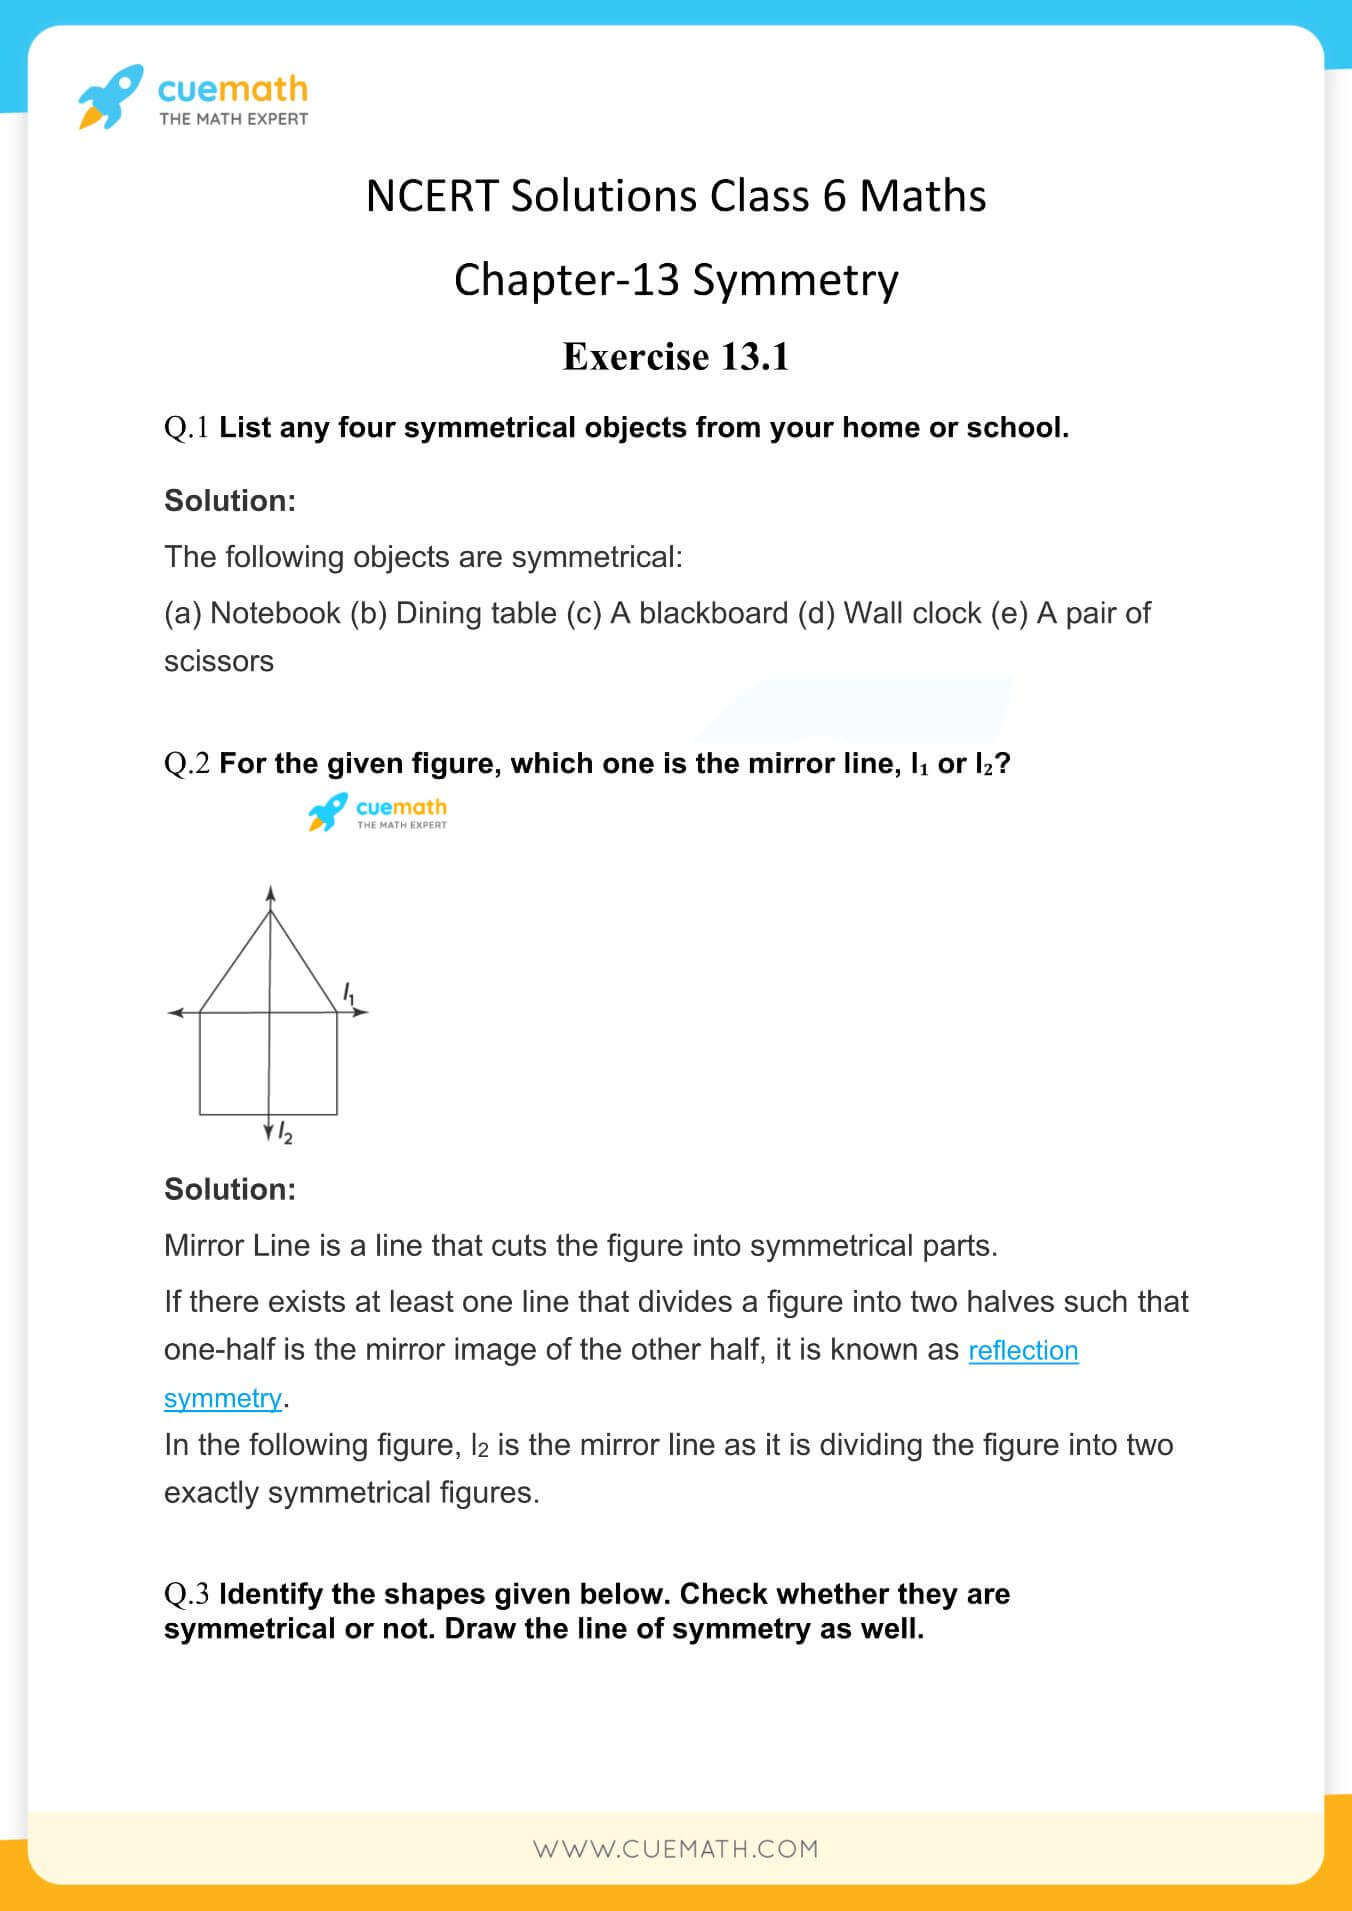 NCERT Solutions Class 6 Maths Chapter 13